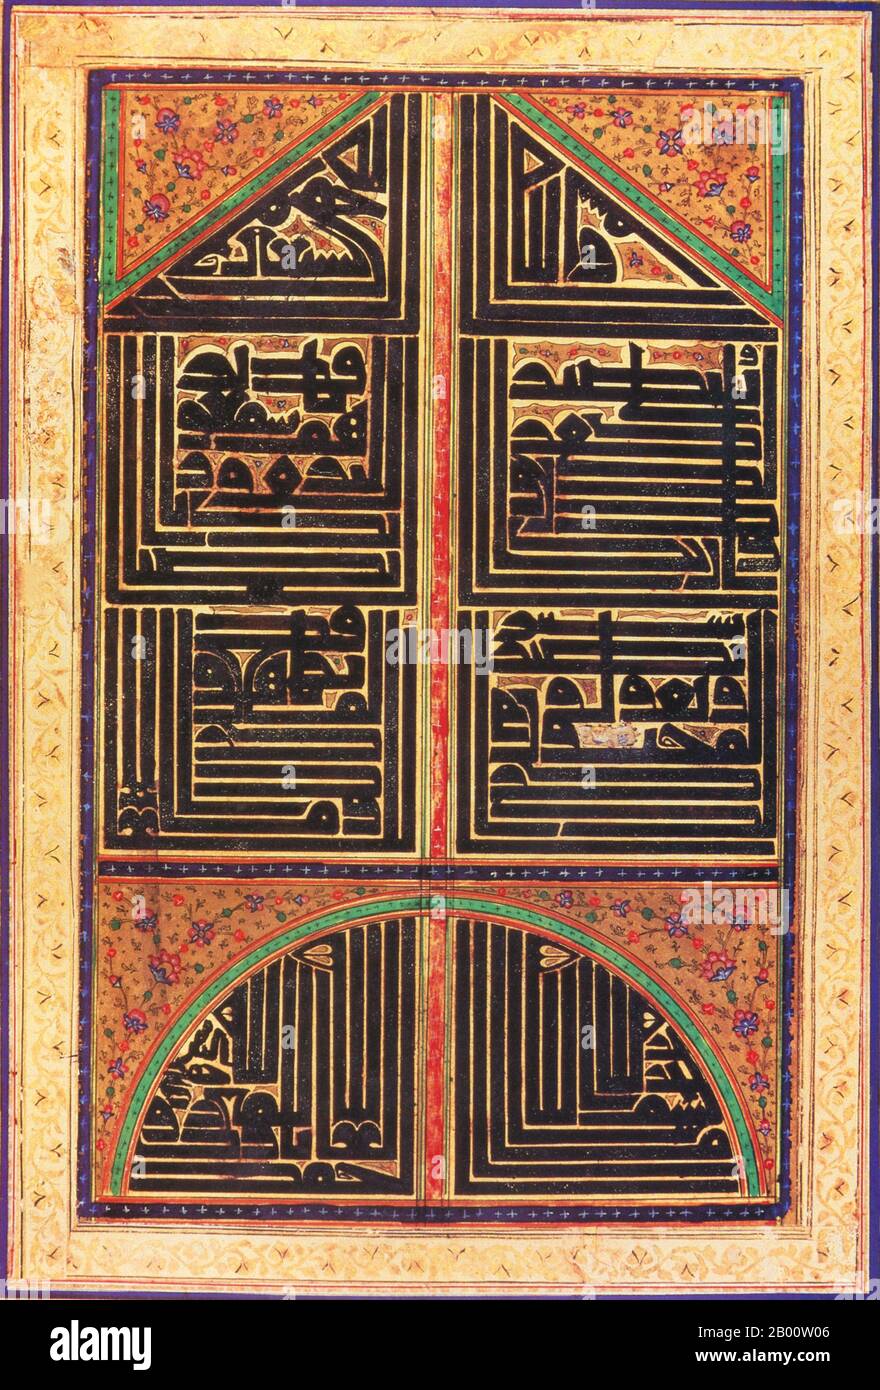 Inde: Une reproduction d'Inde du XVIIIe ou XIXe siècle d'une page de Sura LXVIII du Qur'an, stylisée en texte Kufic en forme de «mihrab», ou niche de prière. Un mihrab, or‎ maharib, est une niche dans le mur d'une mosquée qui indique le qibla, la direction de la Kaaba à la Mecque, qui est la direction à laquelle les musulmans doivent faire face lorsqu'ils prient. Le mur dans lequel se trouve un mihrab est appelé ‘mur qibla’. Banque D'Images